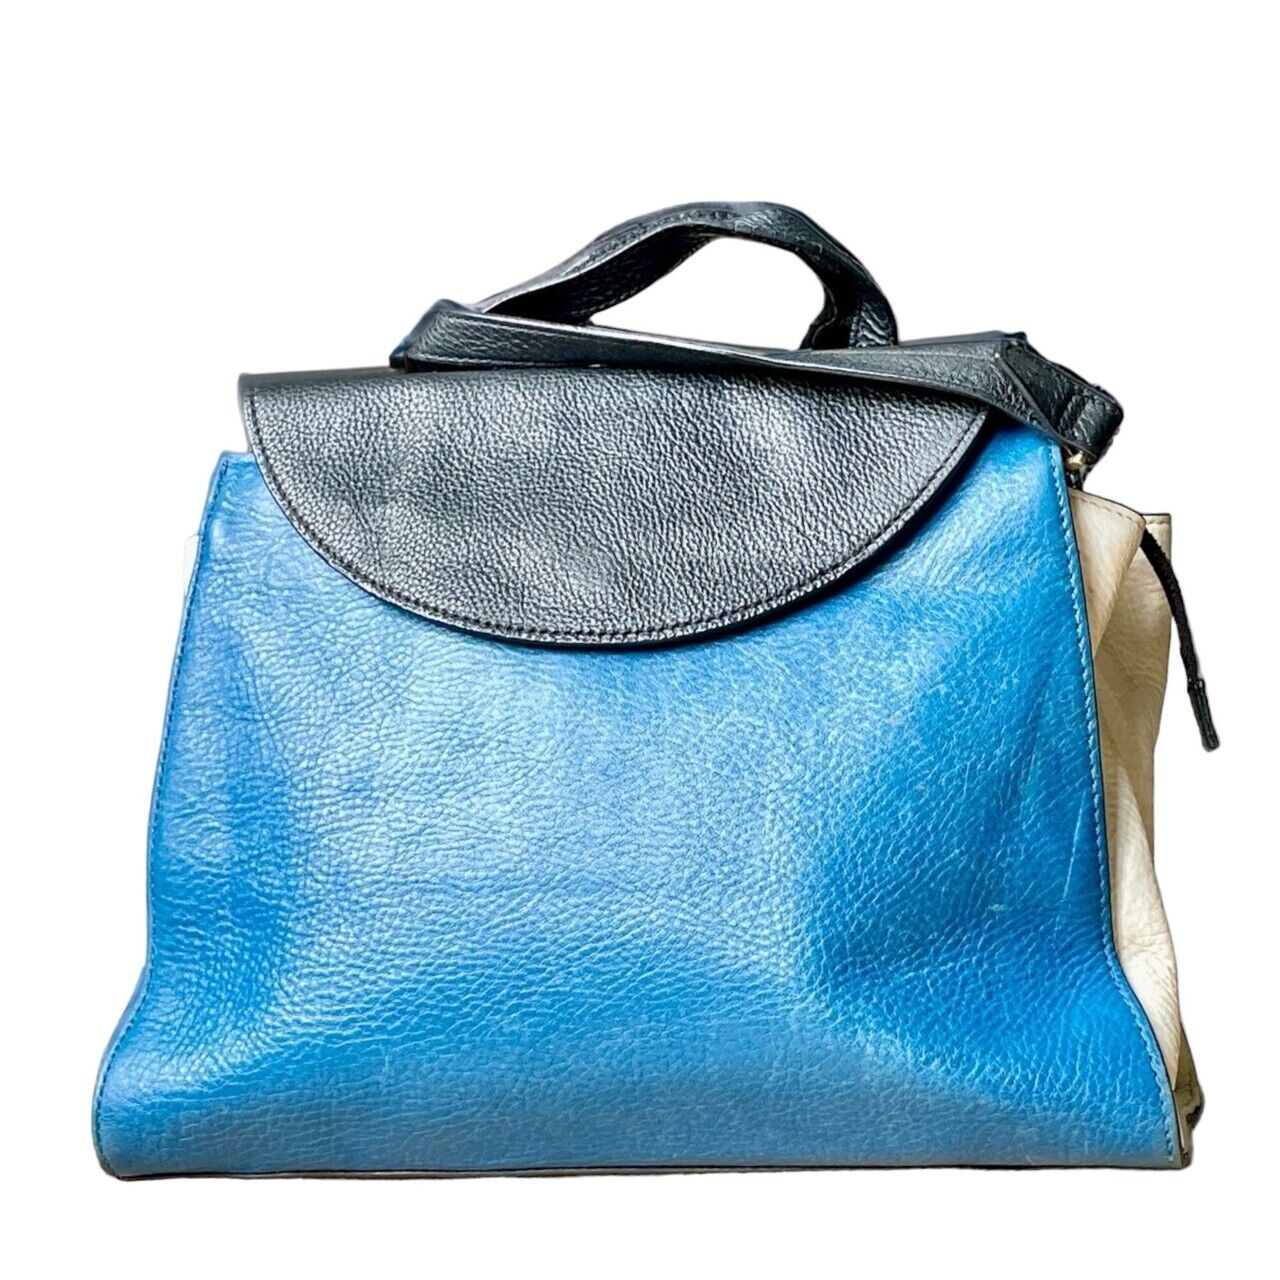 Kate Spade Saturday Blue & White Handbag